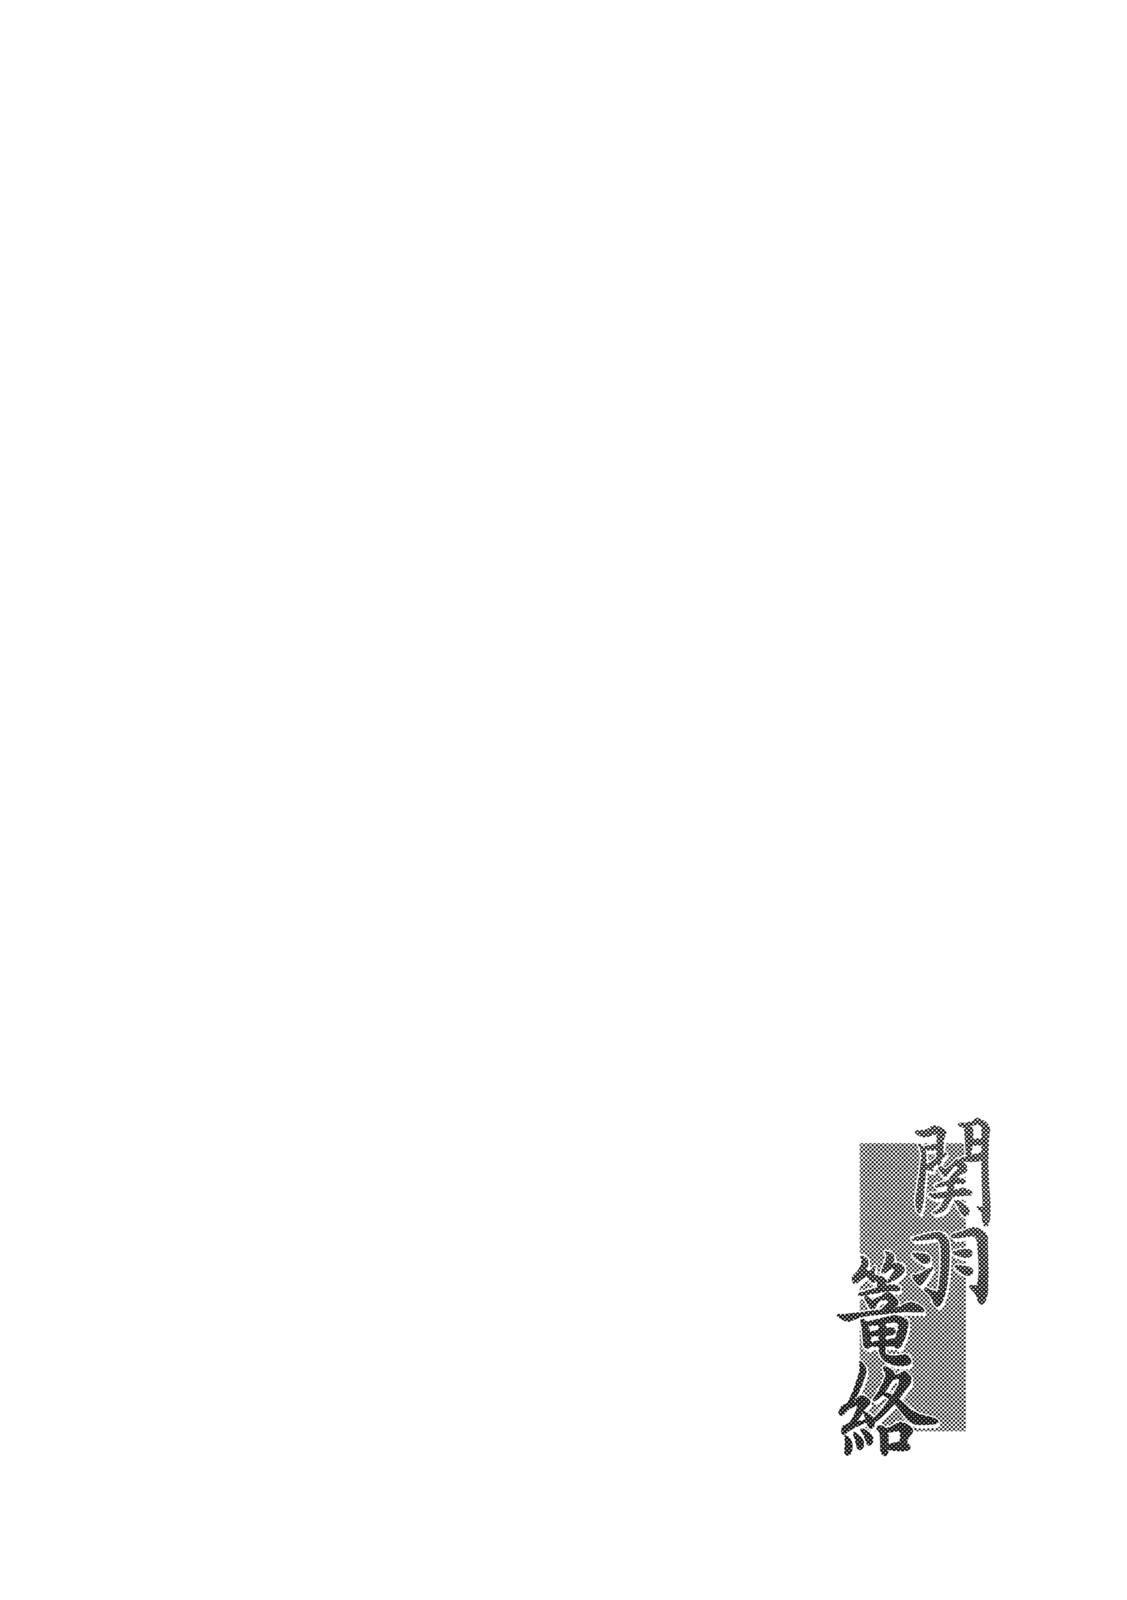 Huge Kanu Rouraku - Ikkitousen Brunet - Page 3